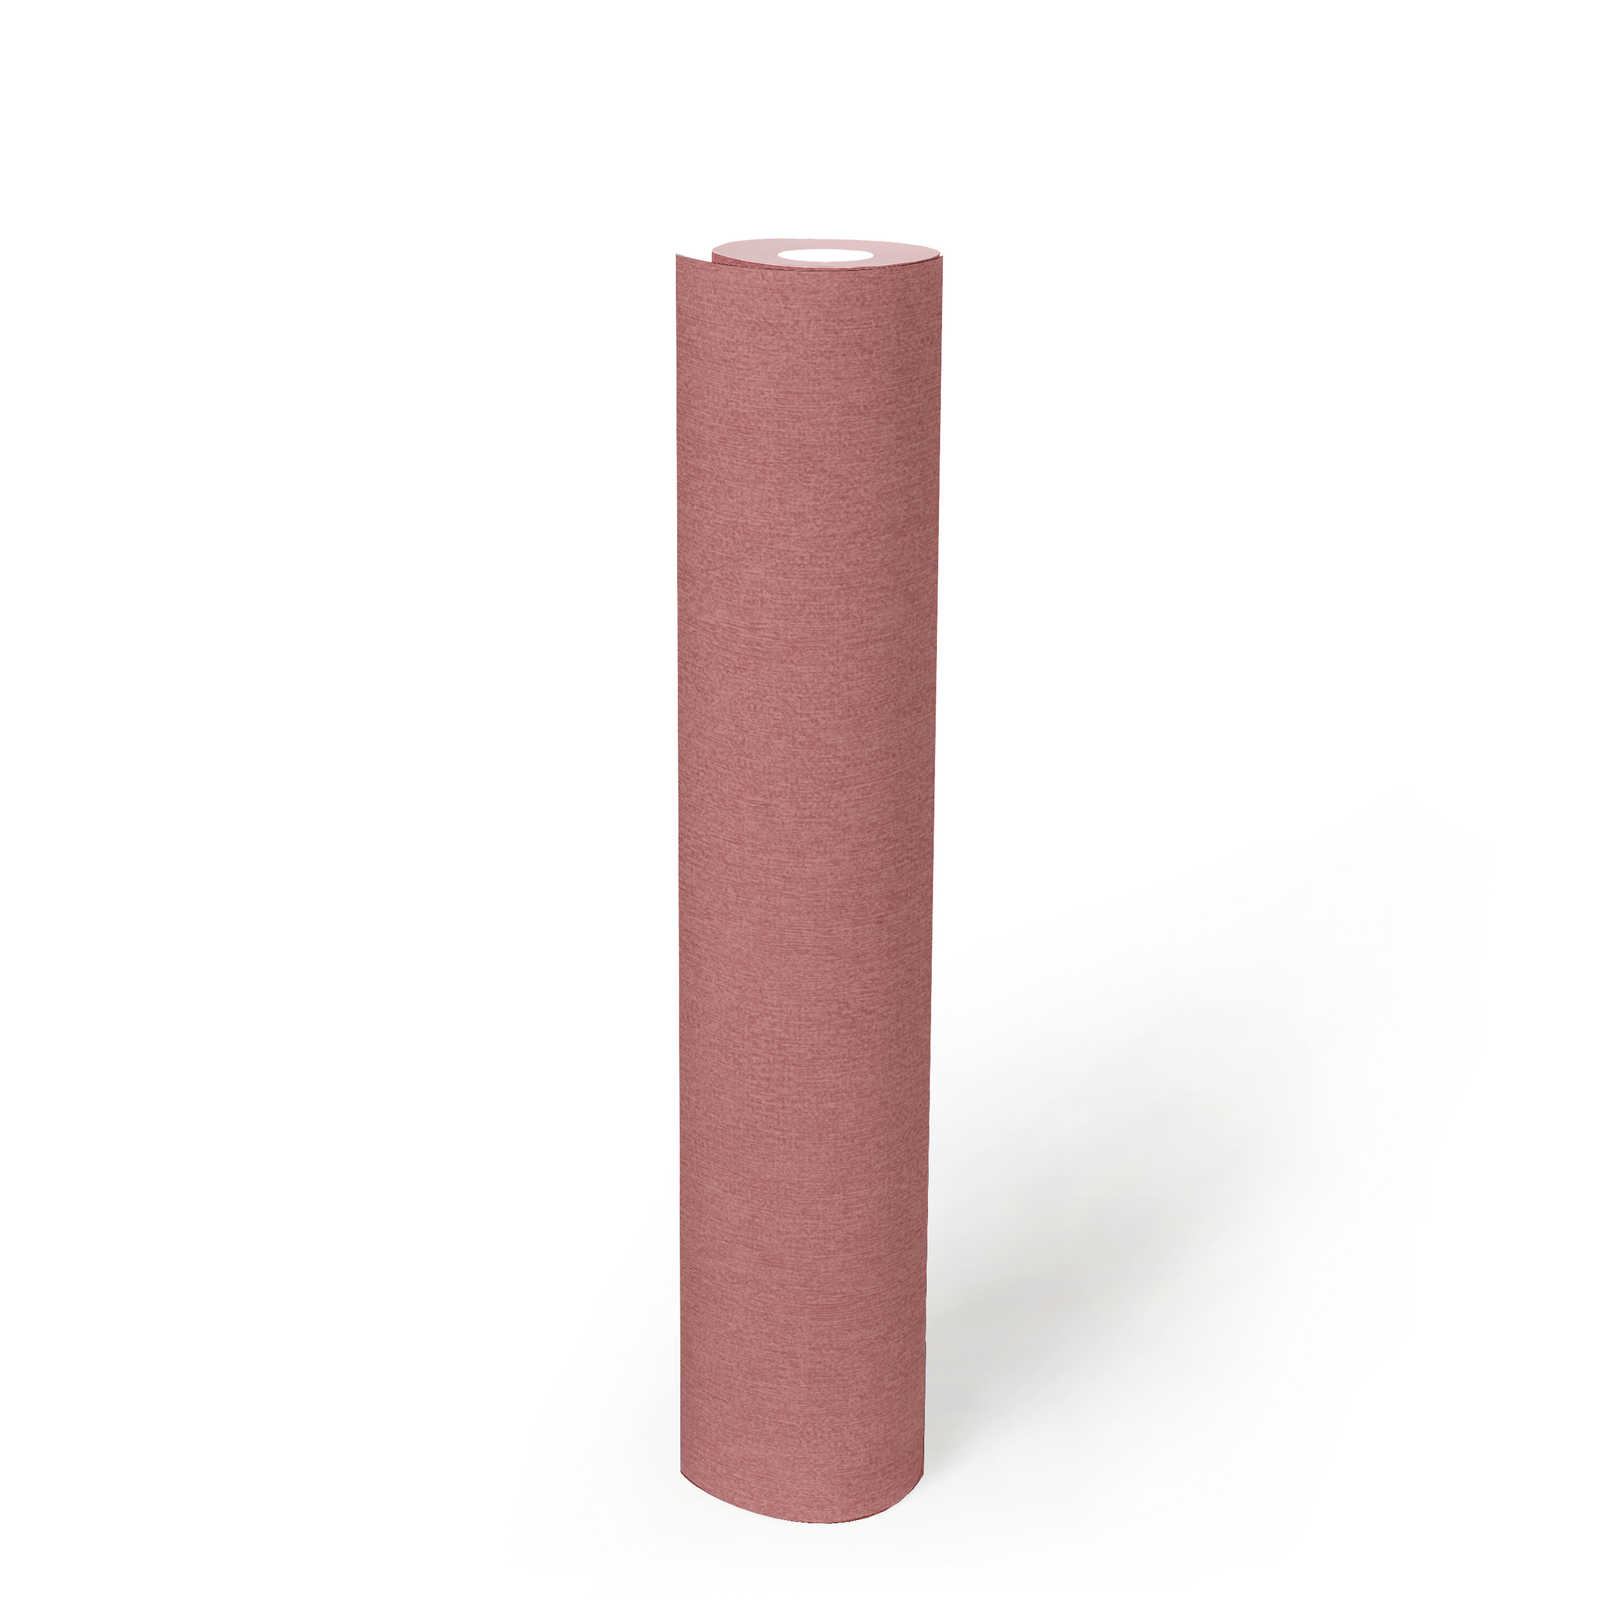             Vliestapete einfarbig & matt mit Struktur Muster – Rosa
        